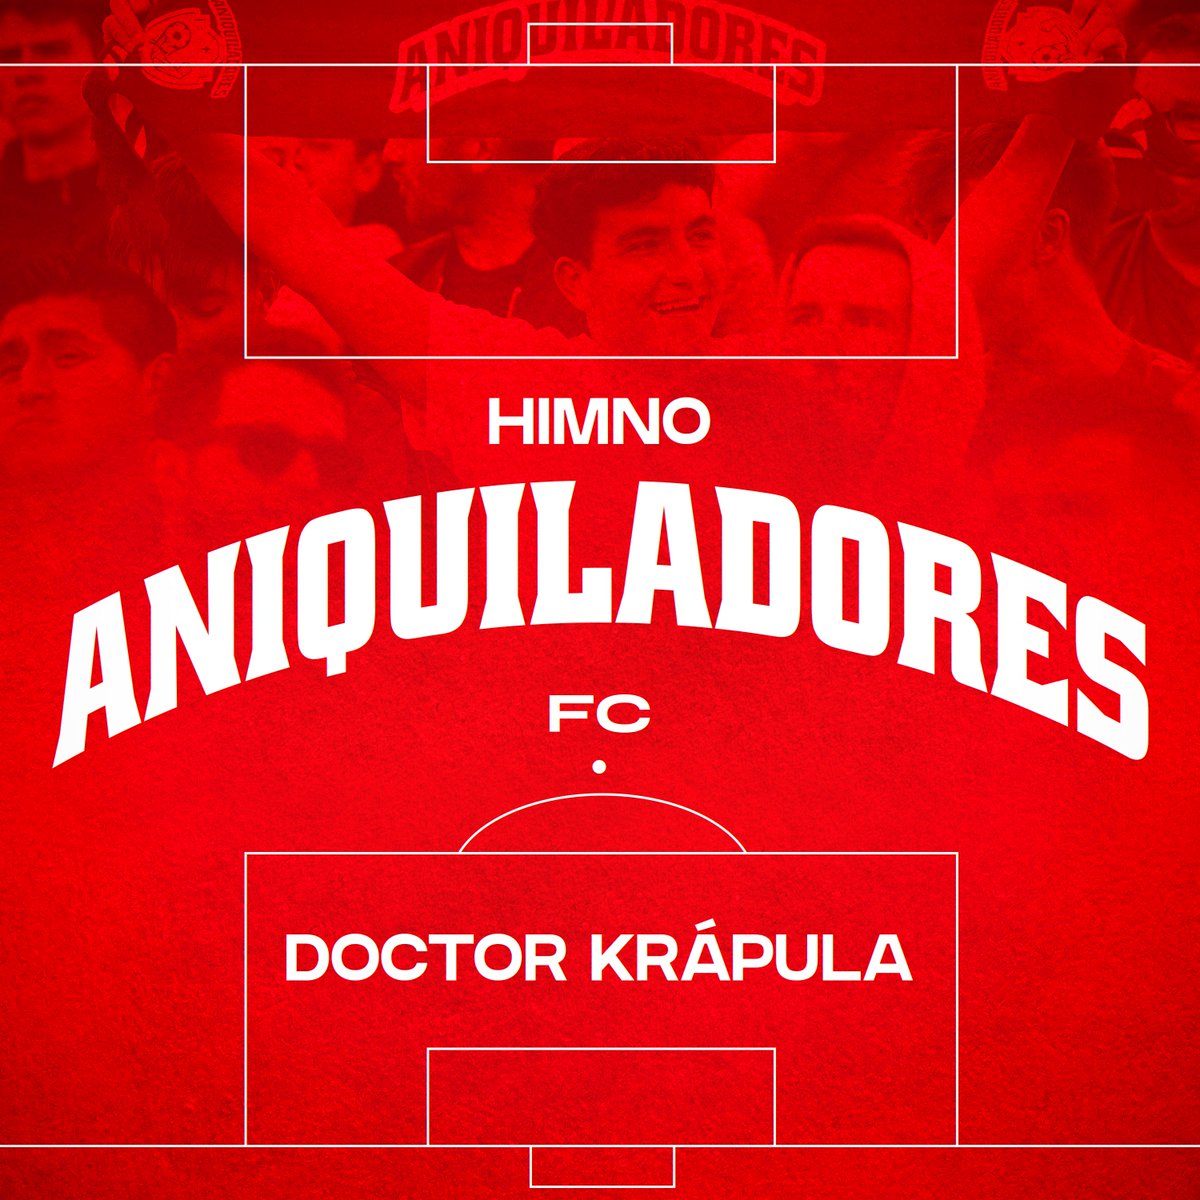 TENEMOS HIMNO!!! 🎵 Ya puedes escuchar el himno oficial de Aniquiladores FC en colaboración con @DoctorKrapula 🔴⚪️ Escúchalo aquí 👇: m.youtube.com/watch?si=Cy3MR… #AniquiladoresFC 💪